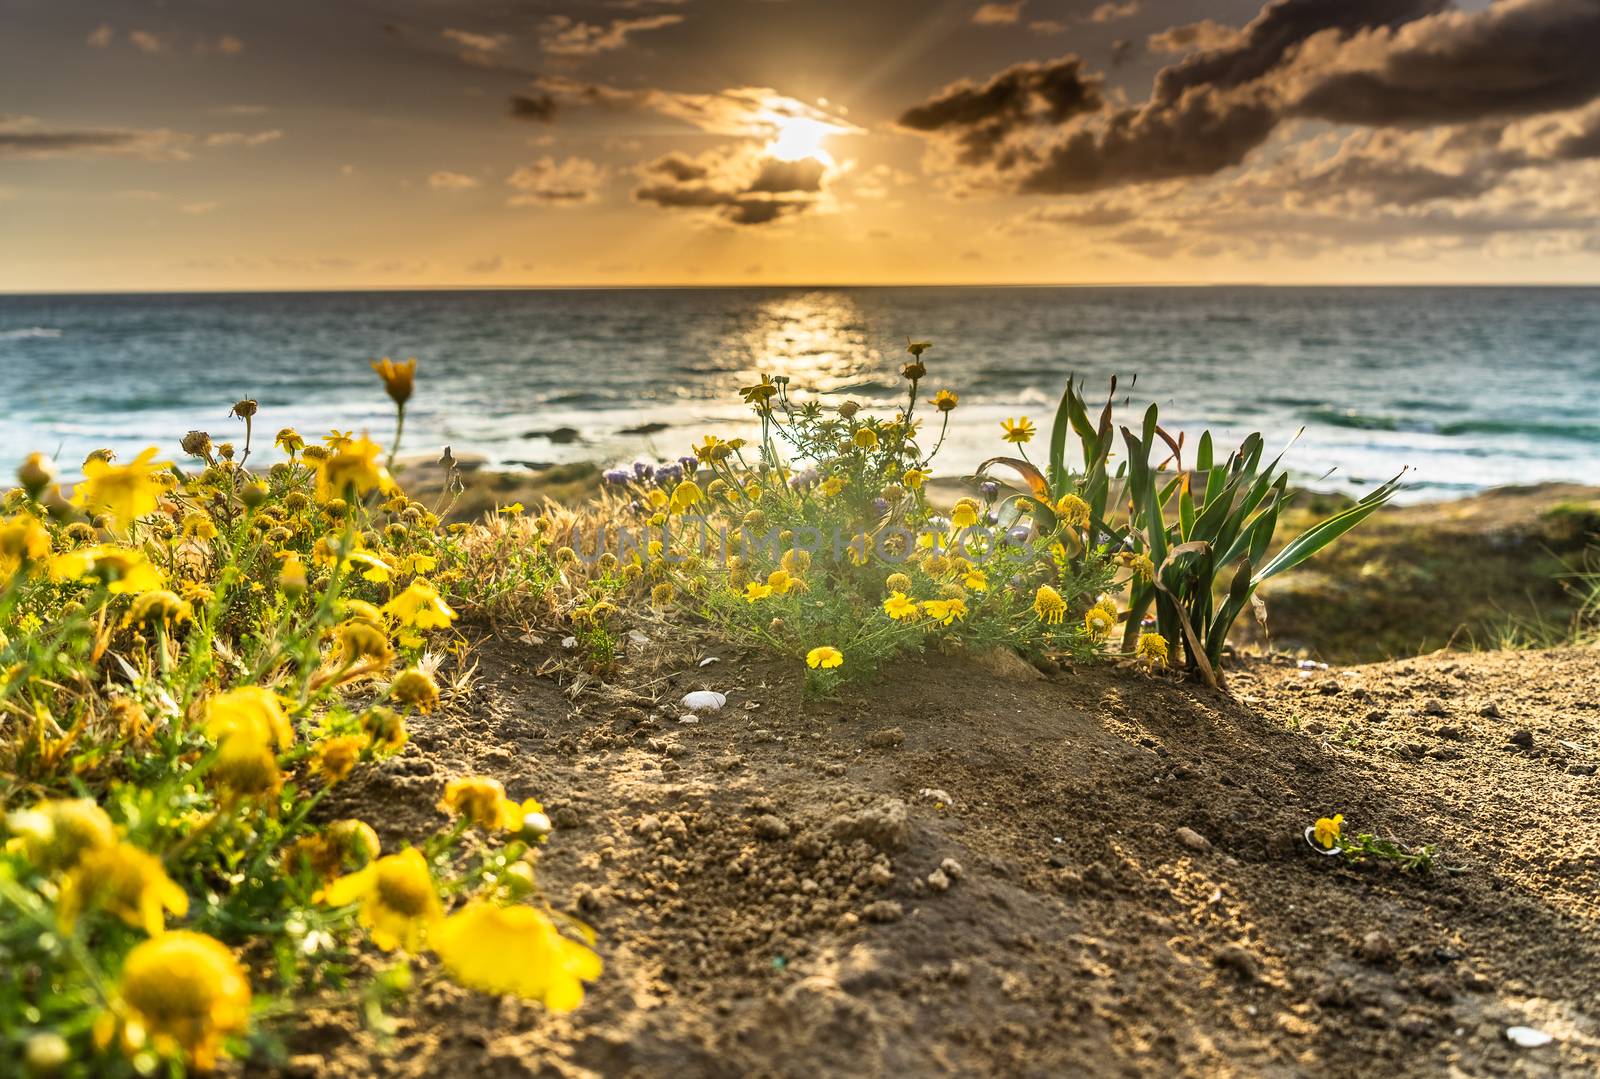 Flowers on mediterranean beach in sunset sea view by javax